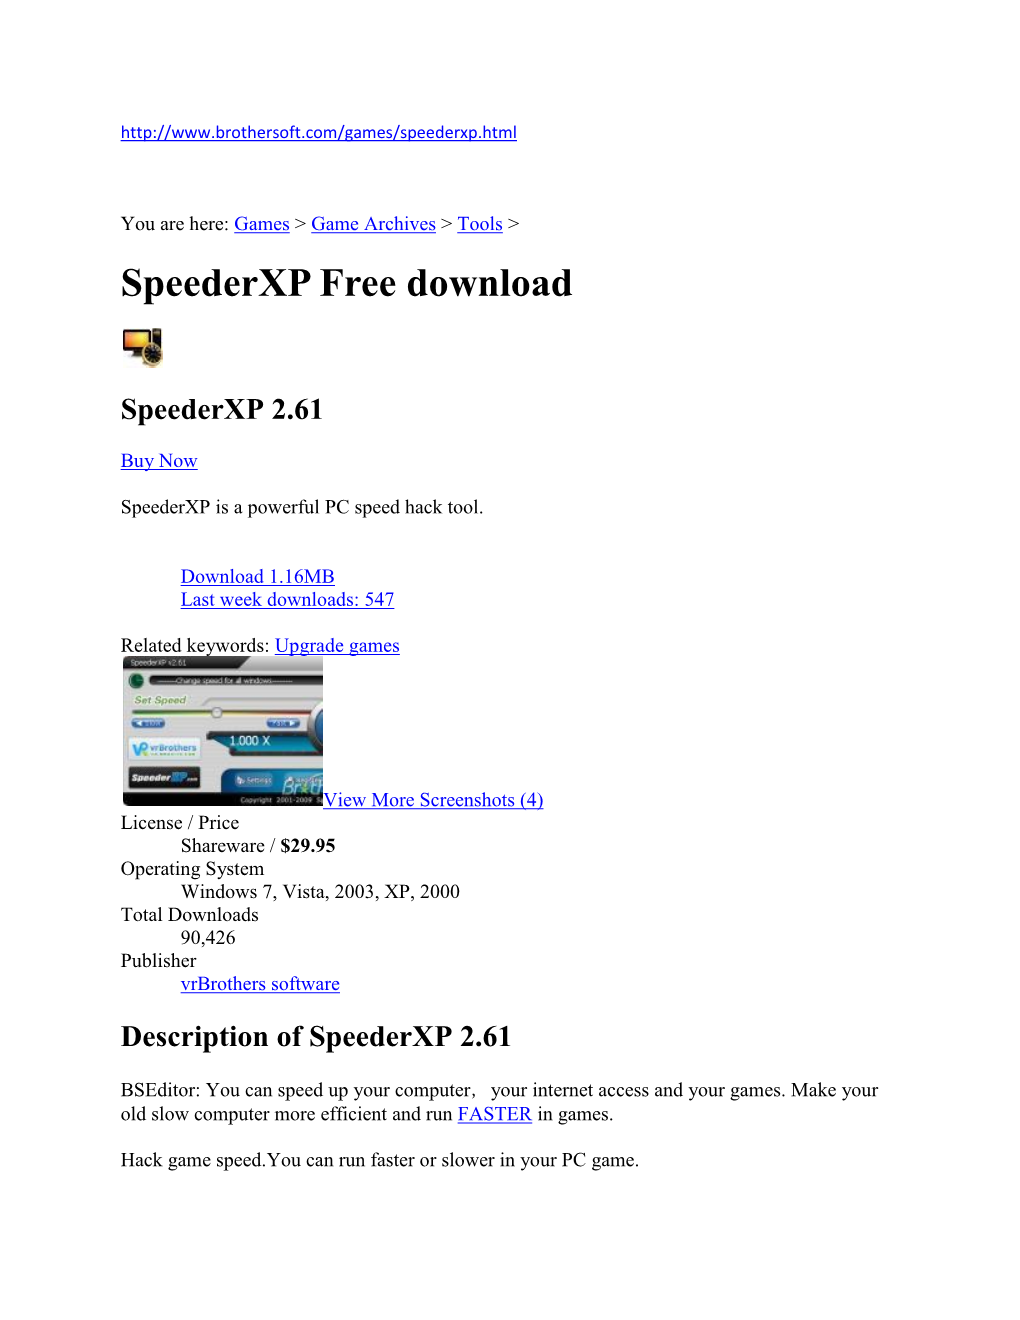 Speederxp Free Download